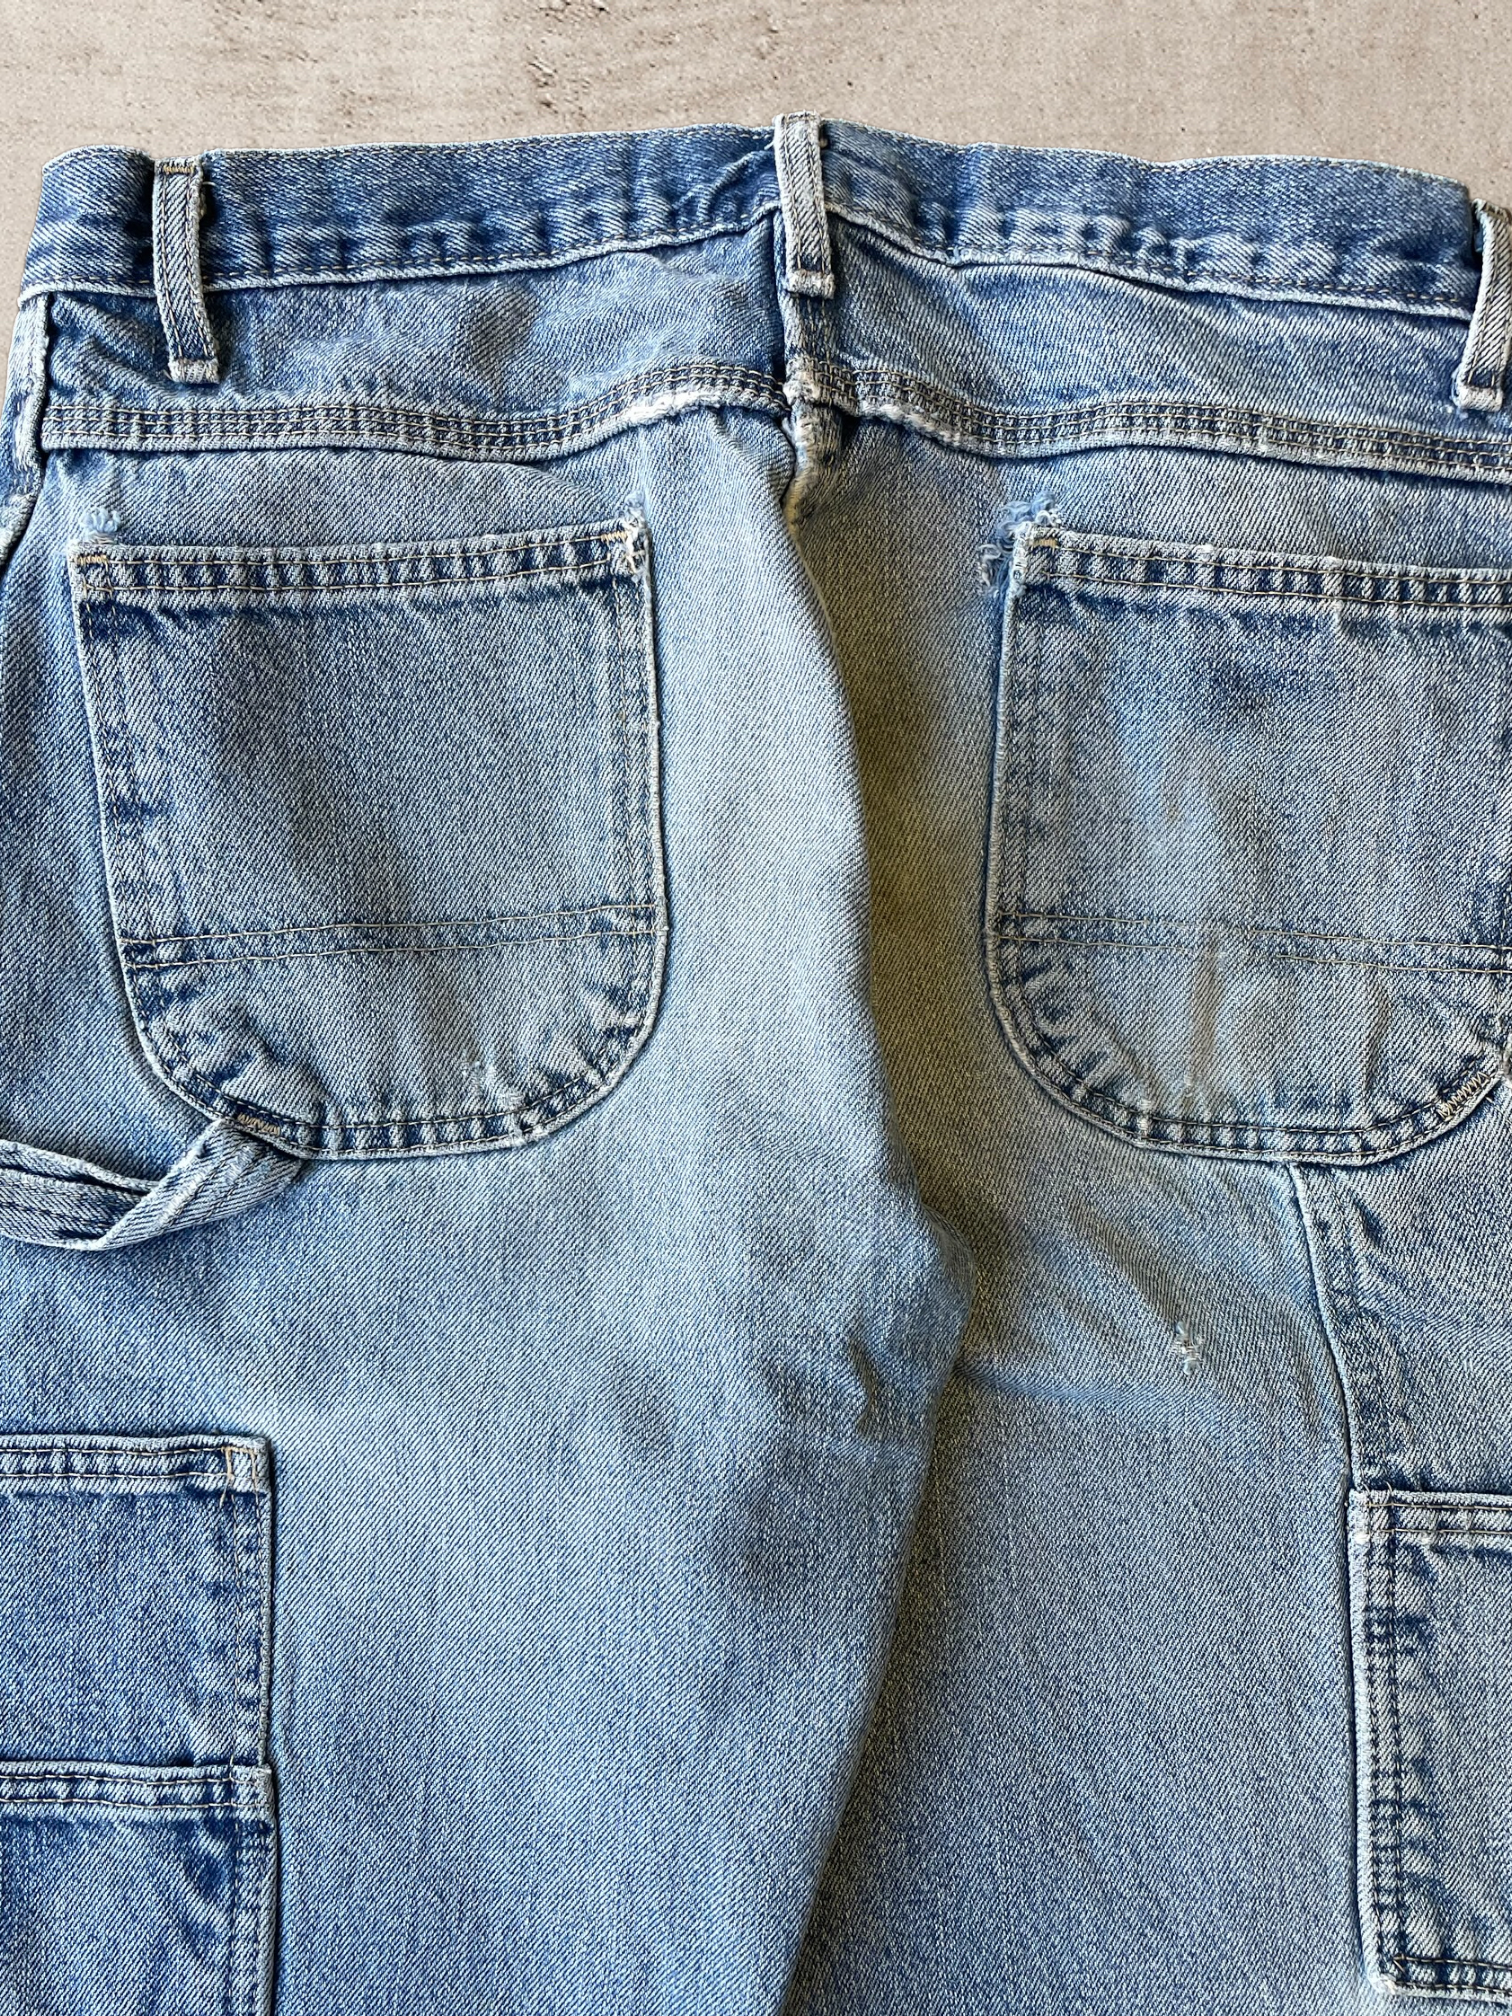 Vintage Dickies Double Knee Distressed Jeans - 32x30